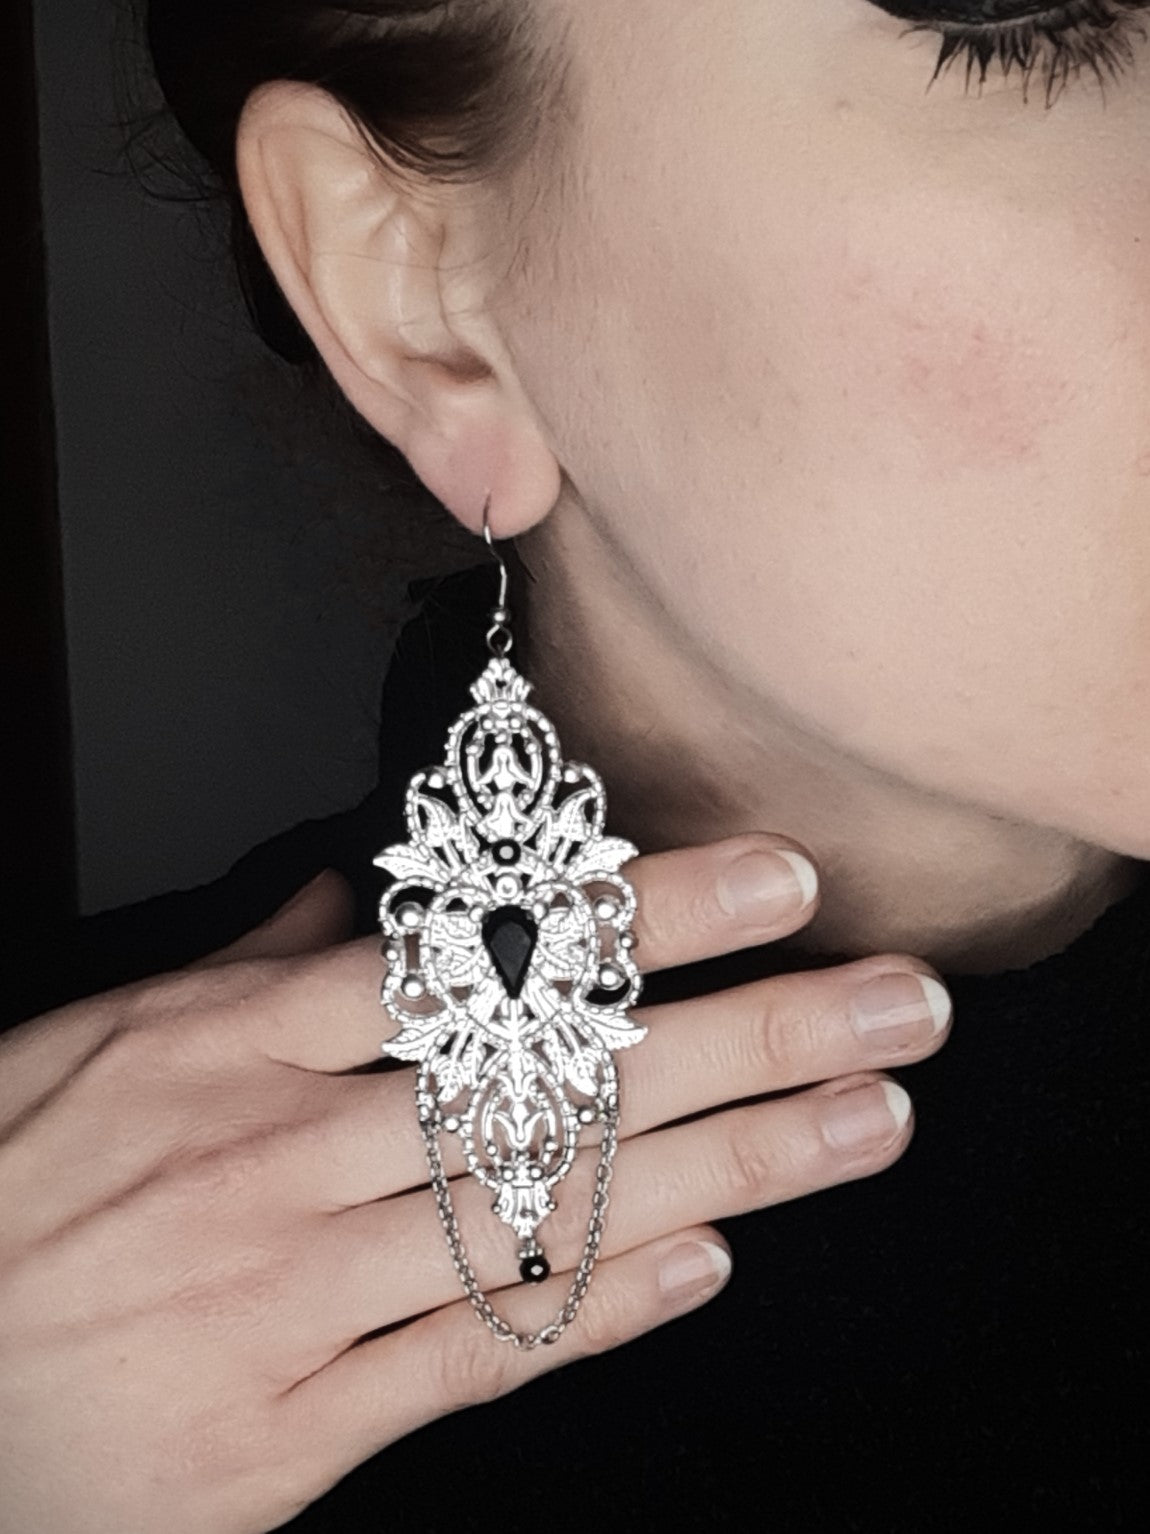 𝕺𝖕𝖚𝖑𝖊𝖓𝖈𝖊 𝟔  - Black earrings